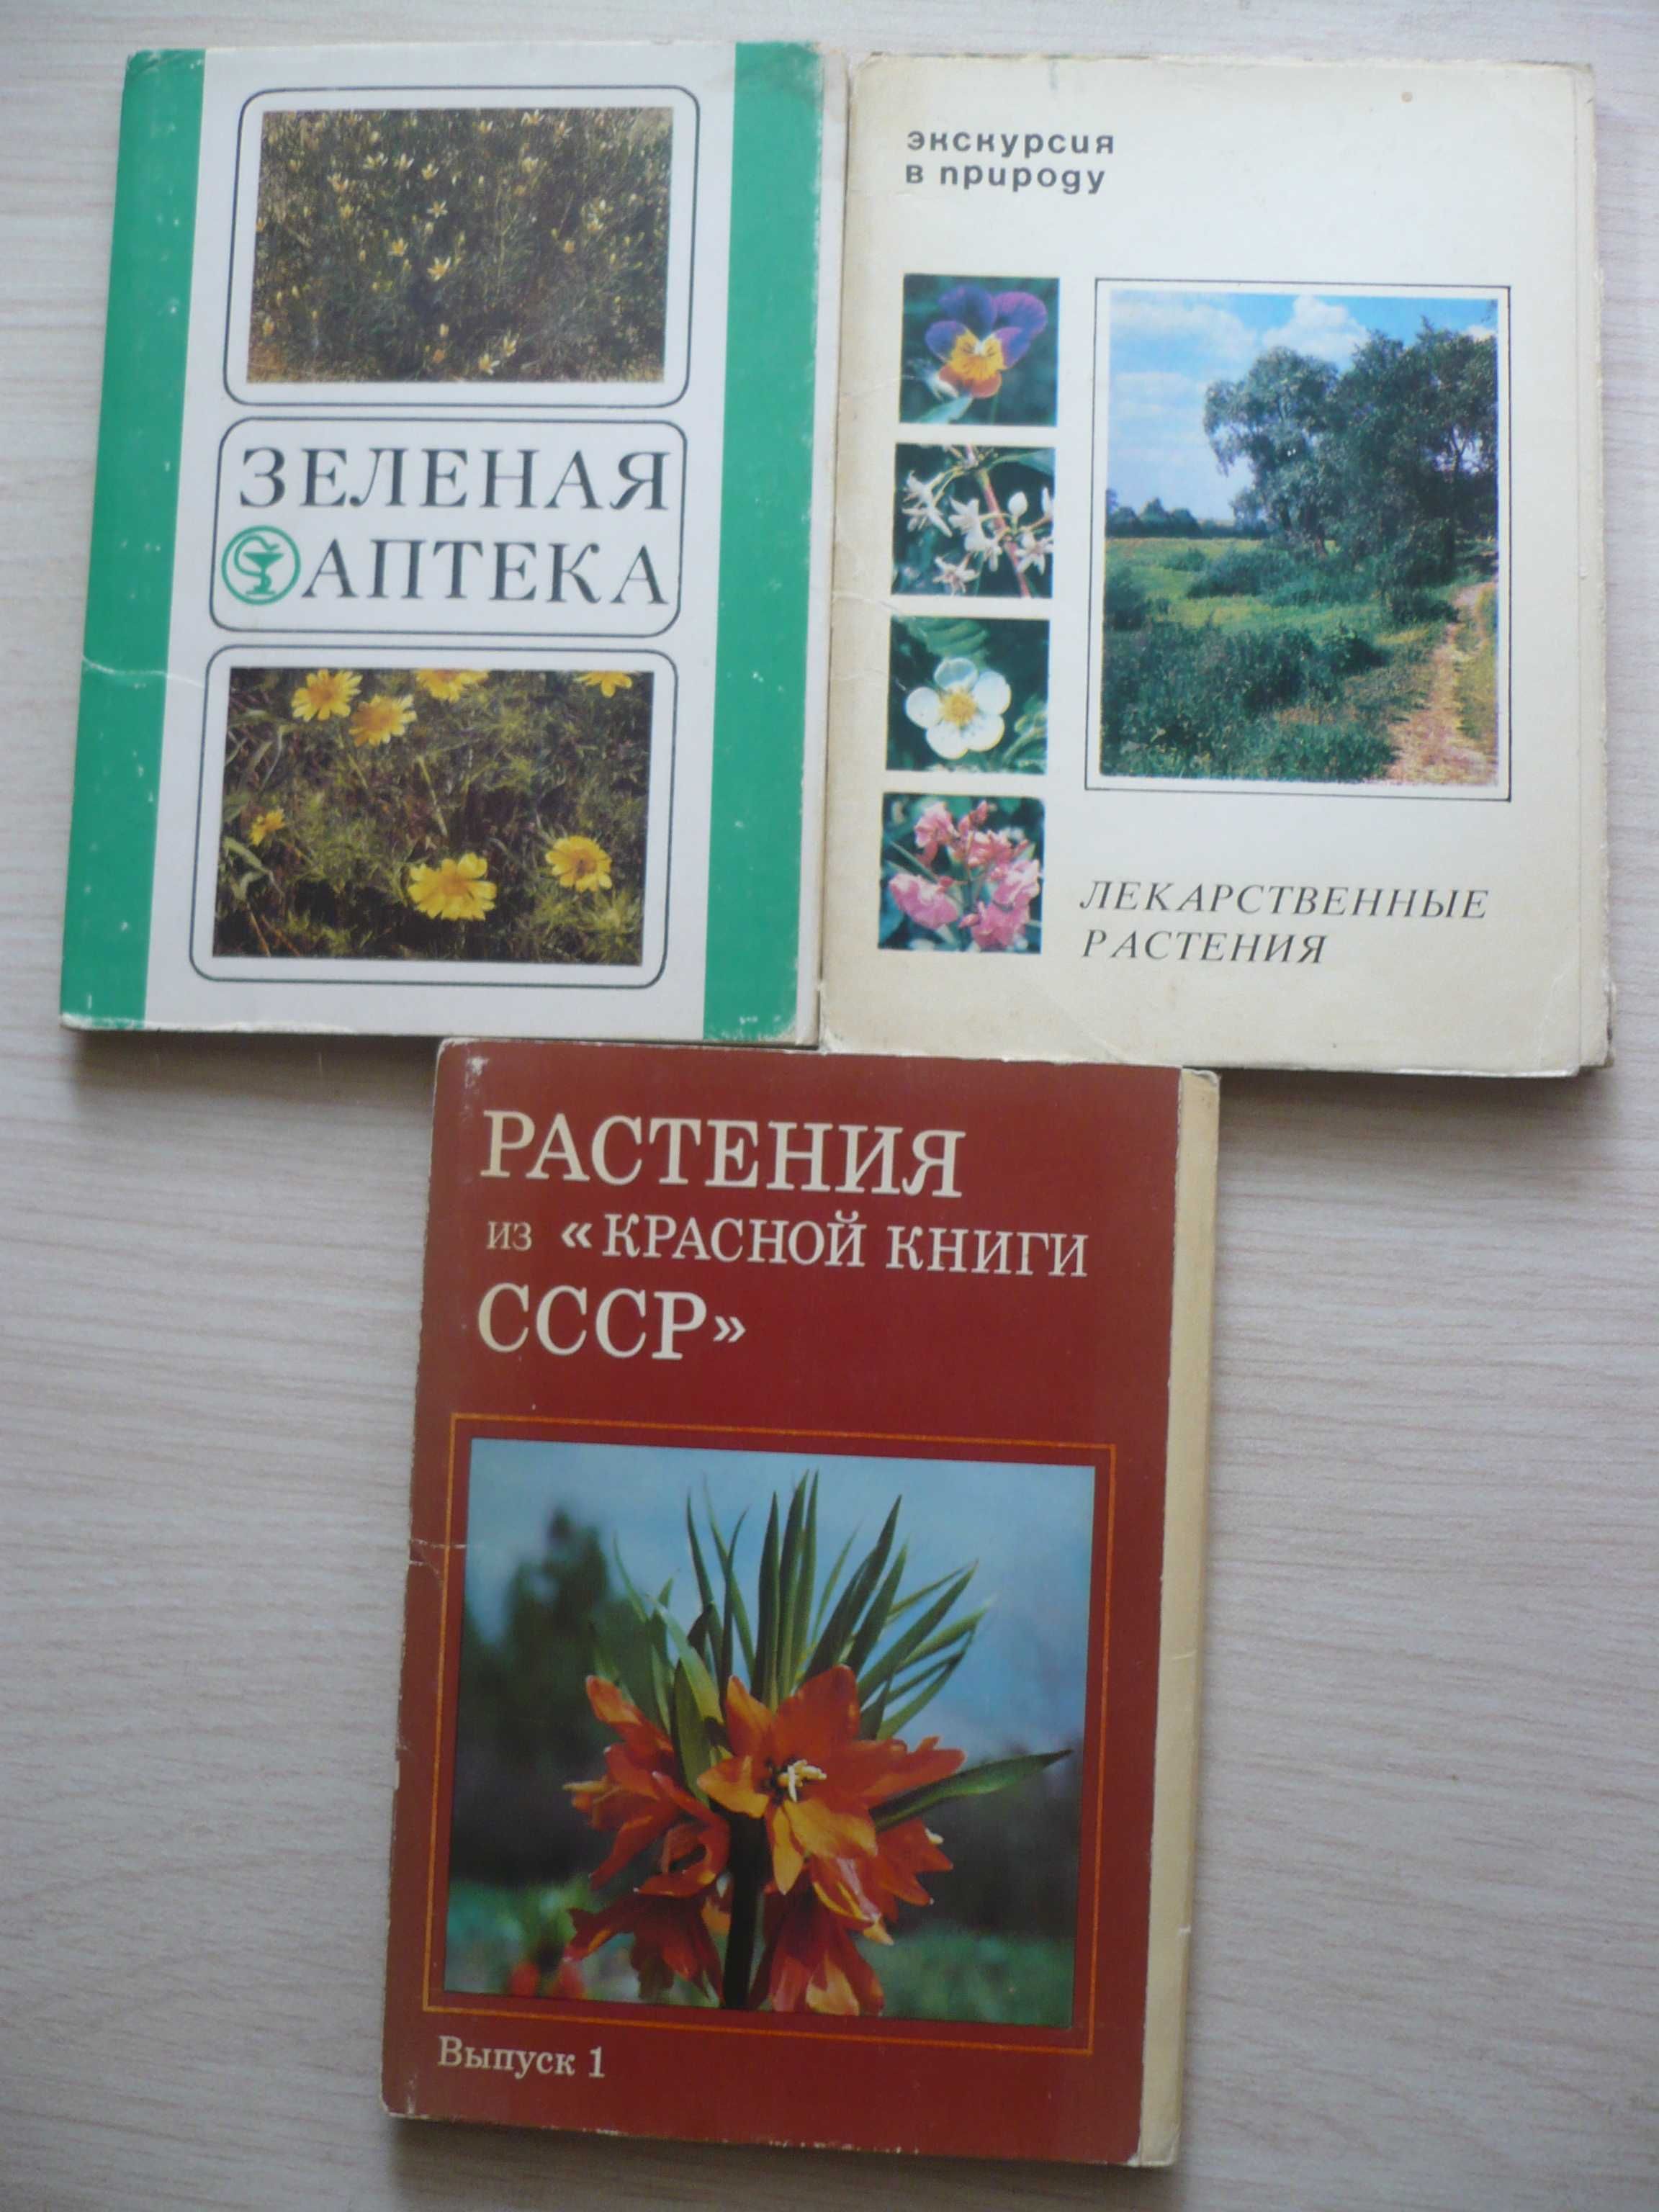 Открытки: Набор (комплект) советских открыток для коллекции